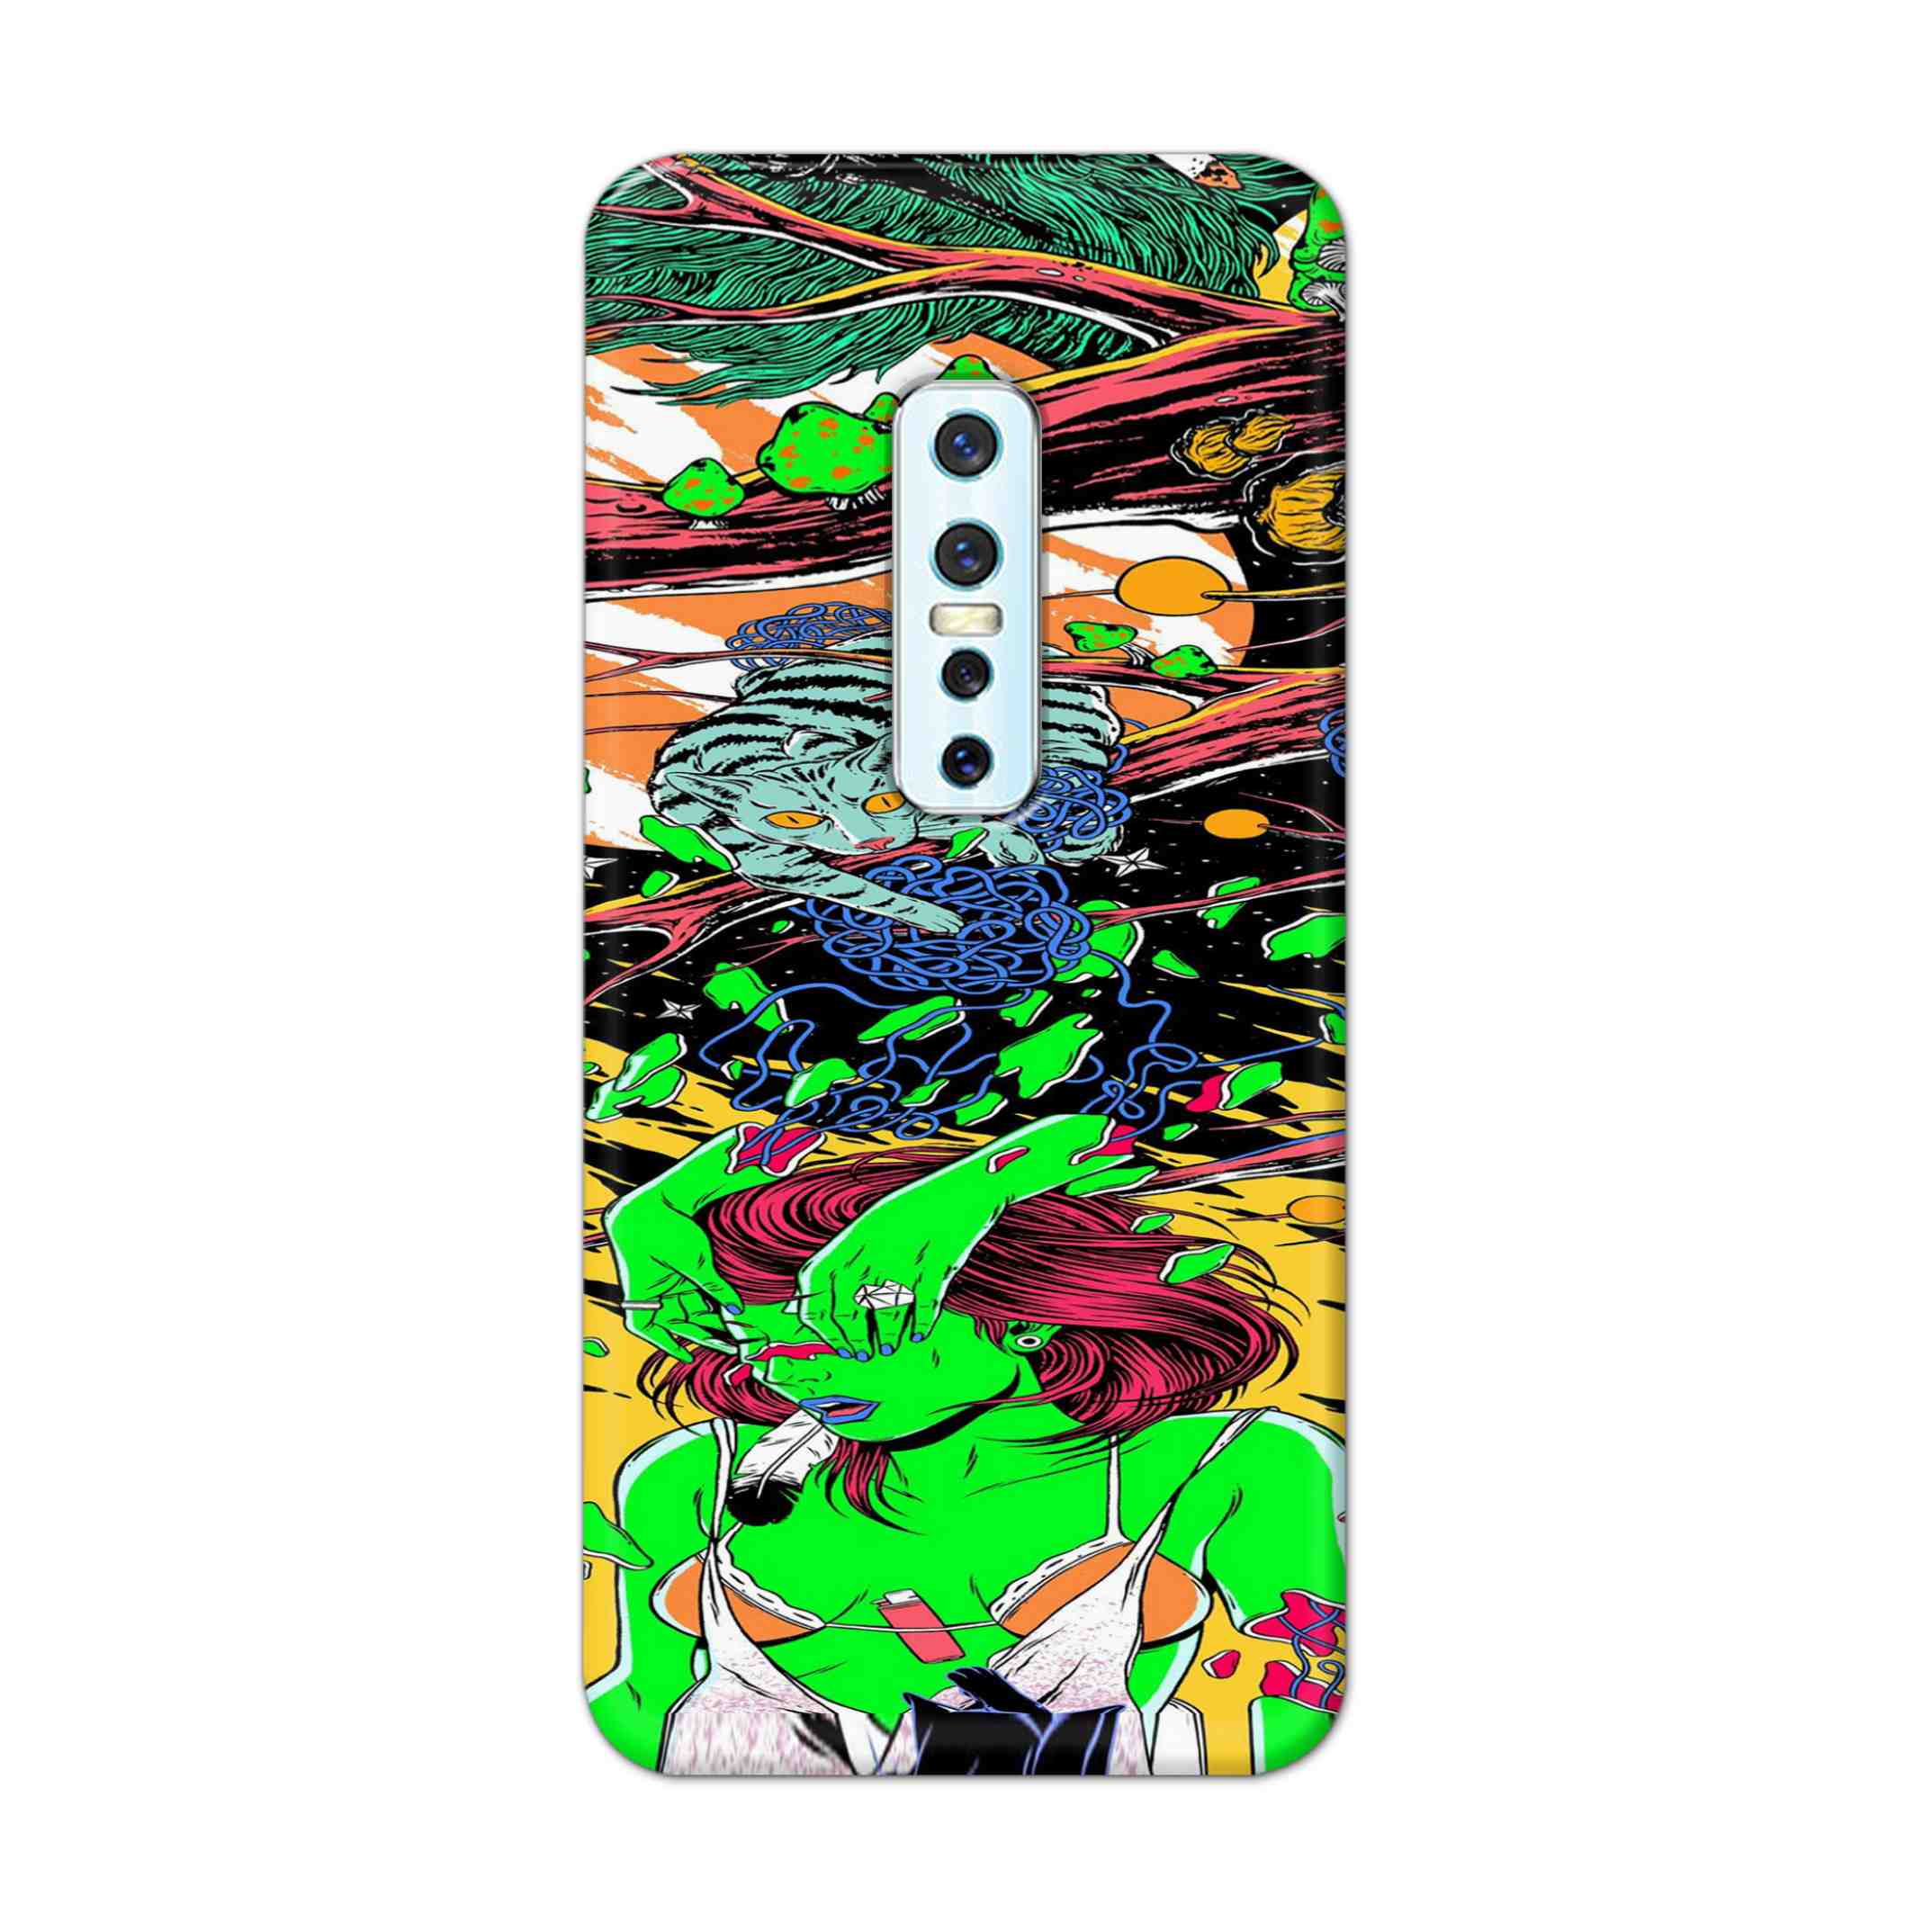 Buy Green Girl Art Hard Back Mobile Phone Case Cover For Vivo V17 Pro Online